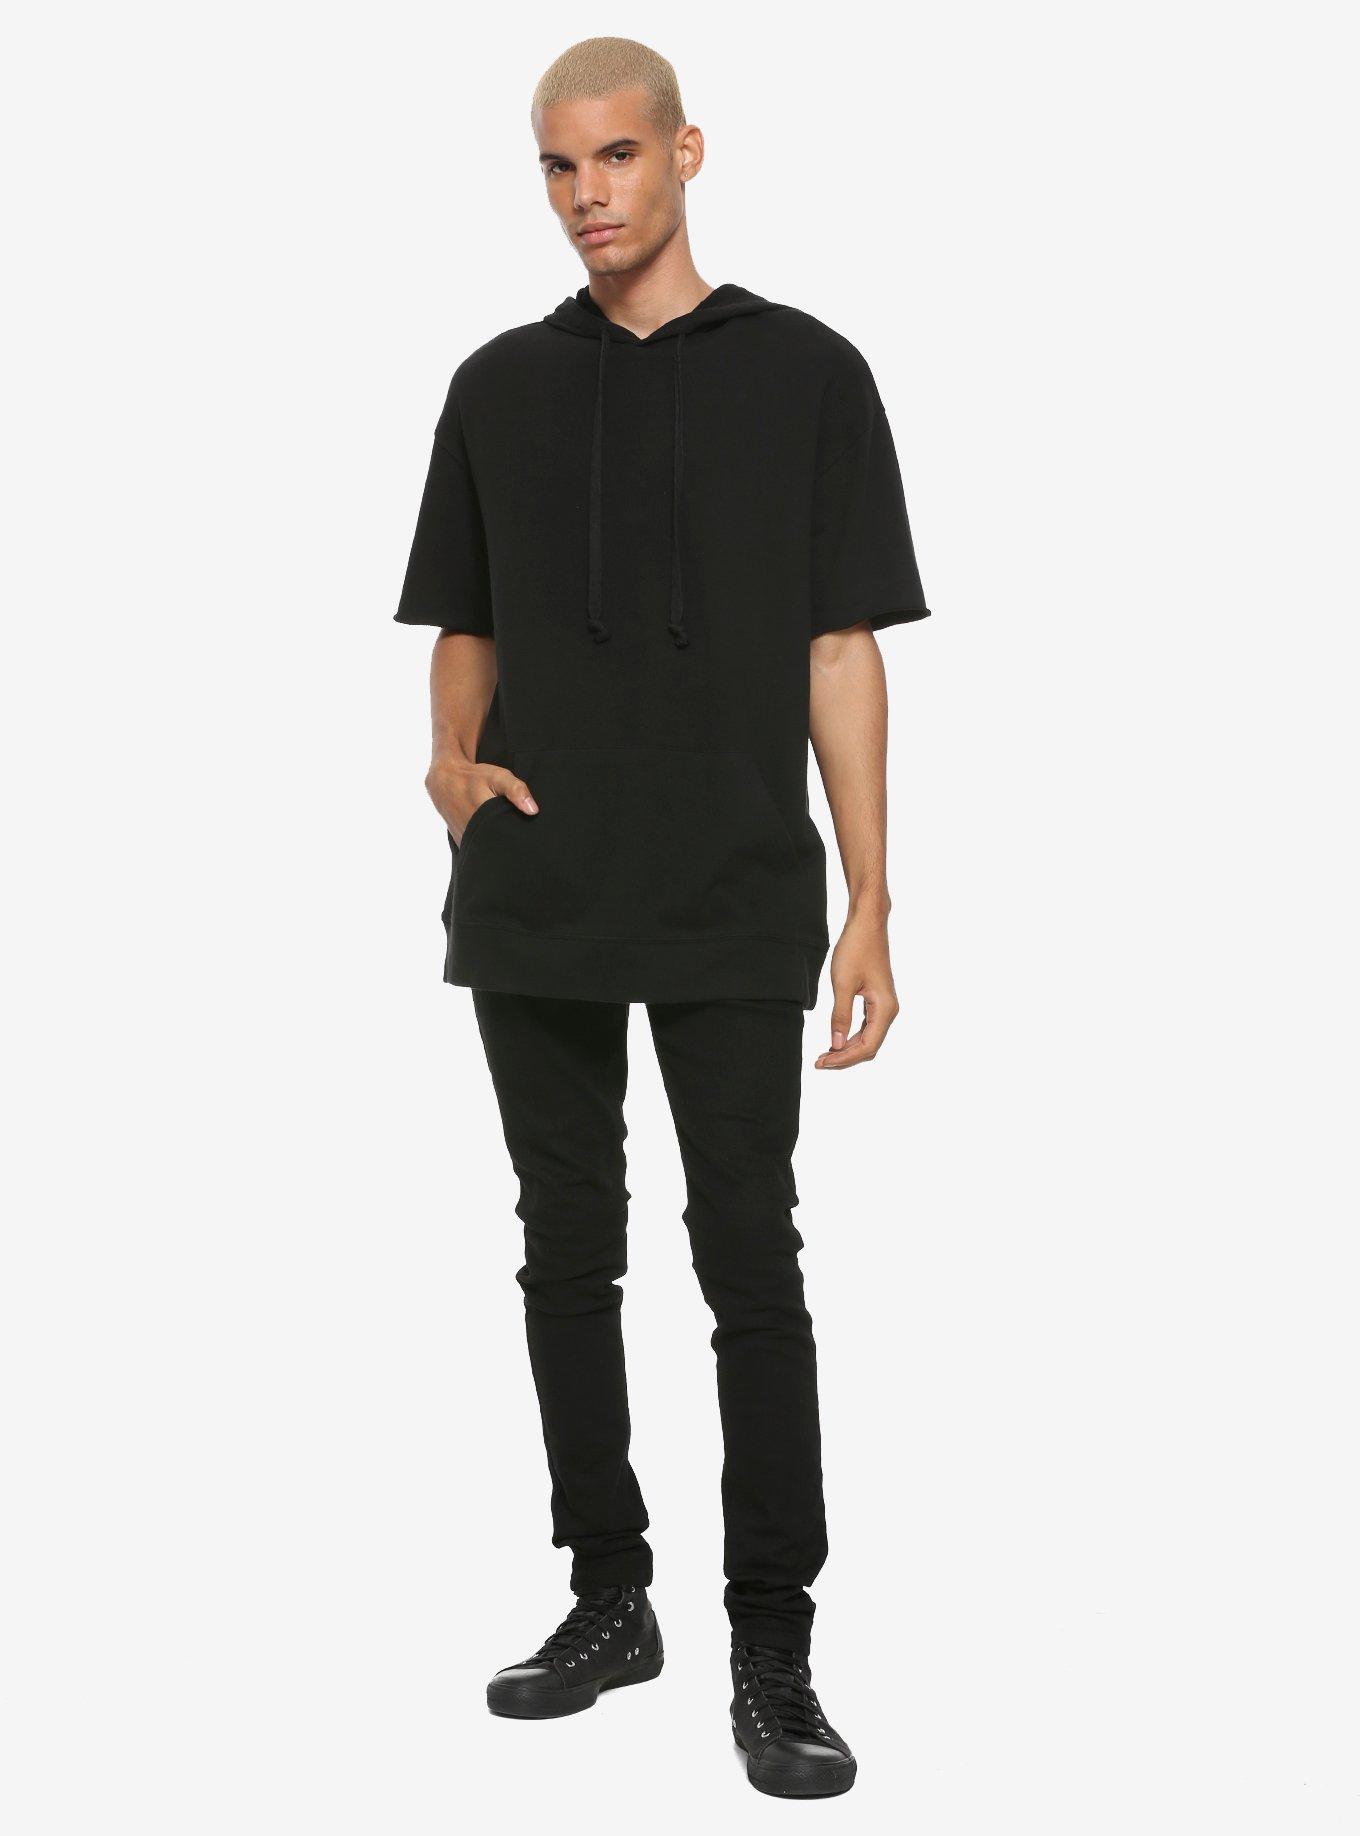 Solid Black Short-Sleeve Hoodie, BLACK, alternate